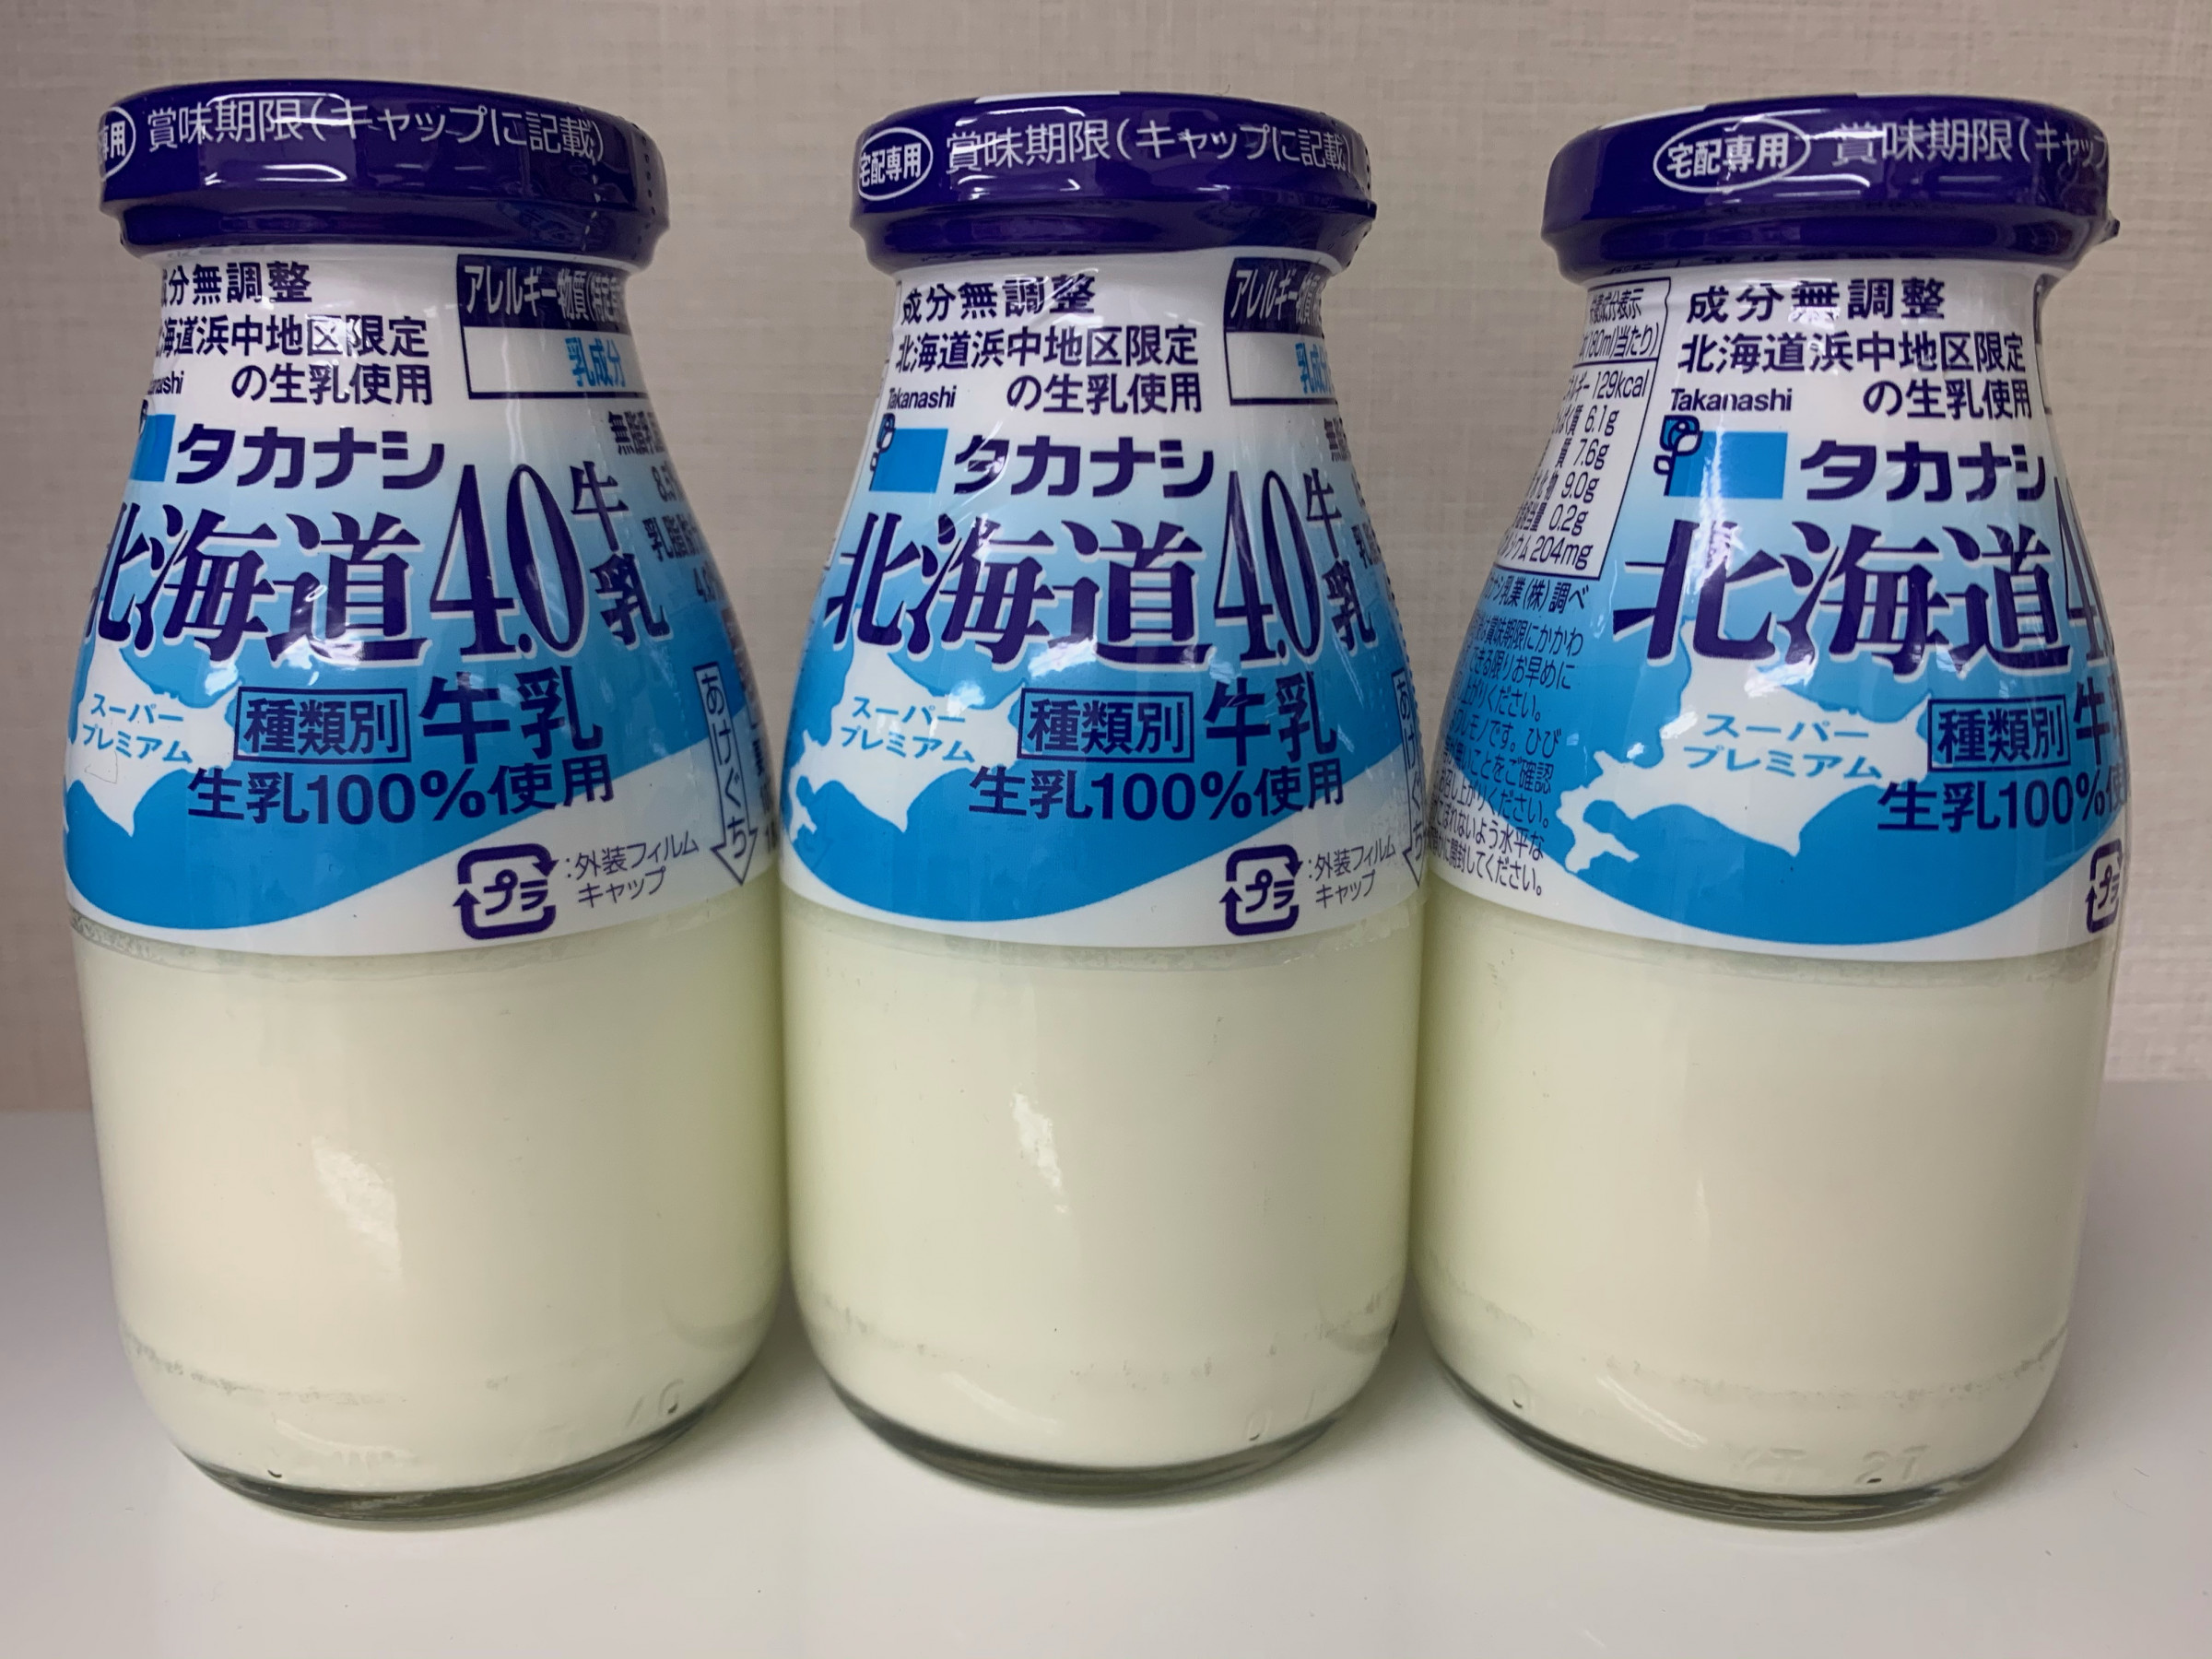 タカナシ特選北海道4.0牛乳※最高級のグレード！